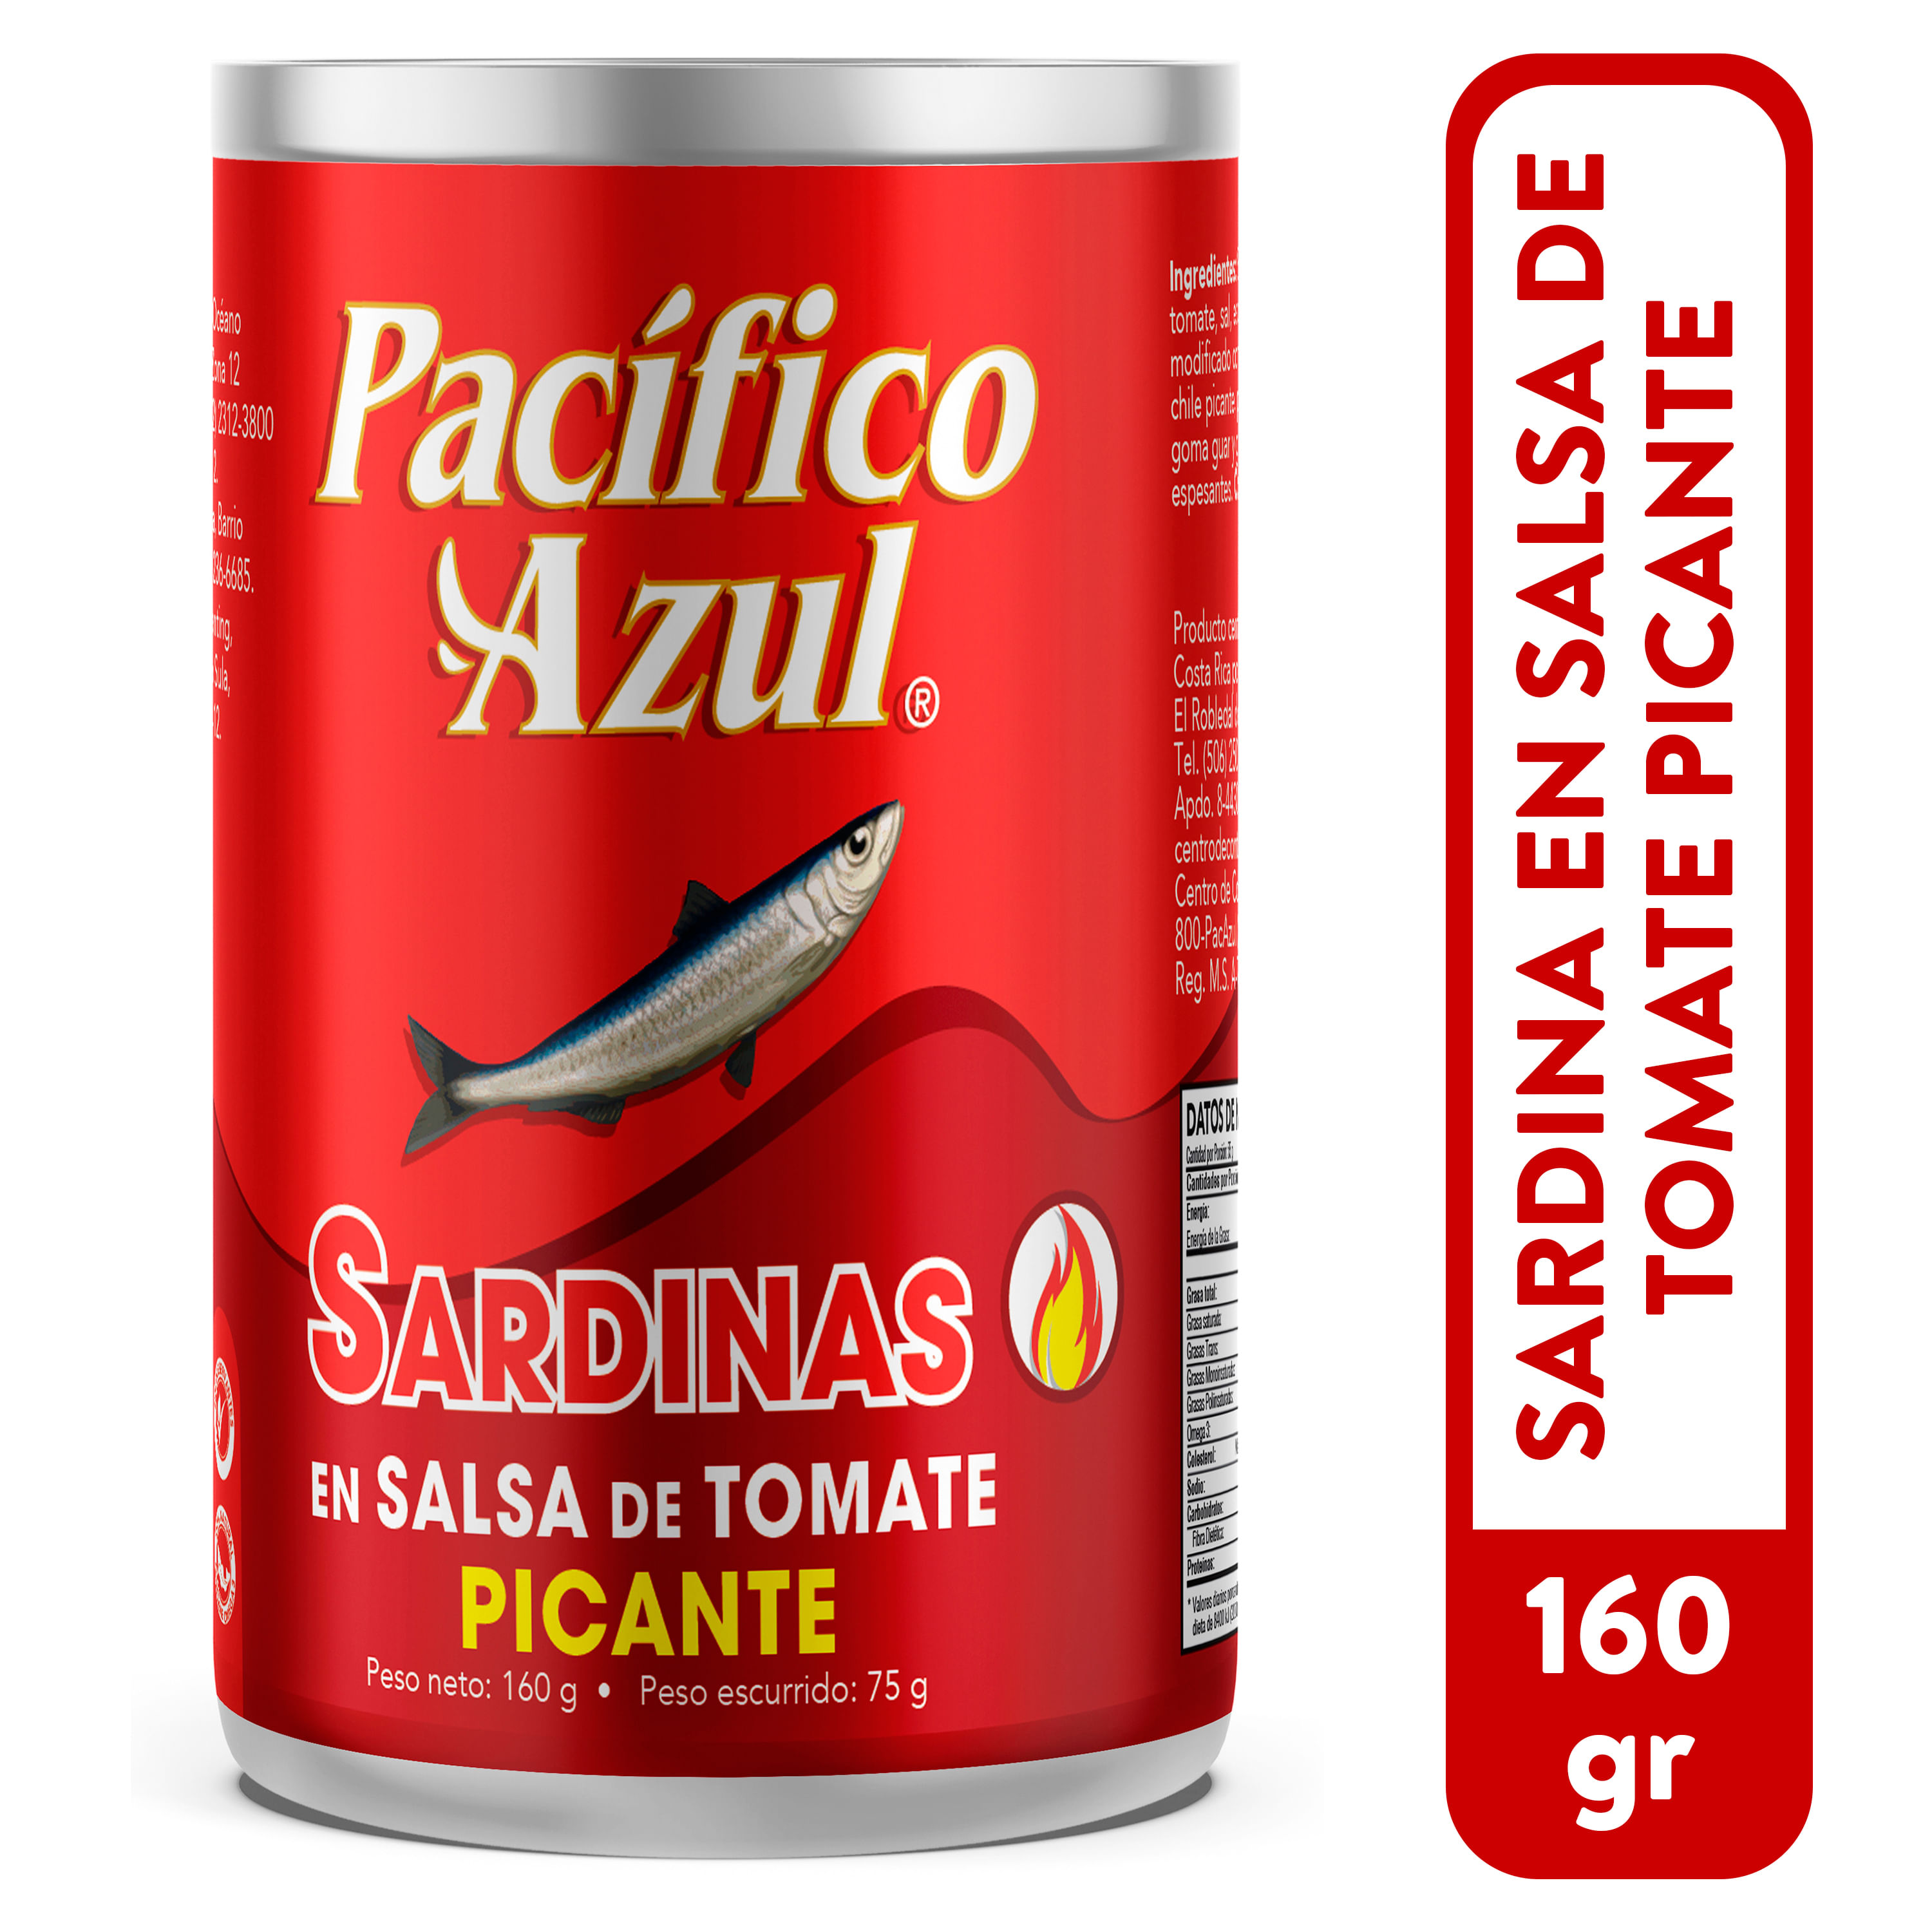 Sardina-Pacifico-Azul-en-Salsa-de-Tomate-Picante-160gr-1-33457